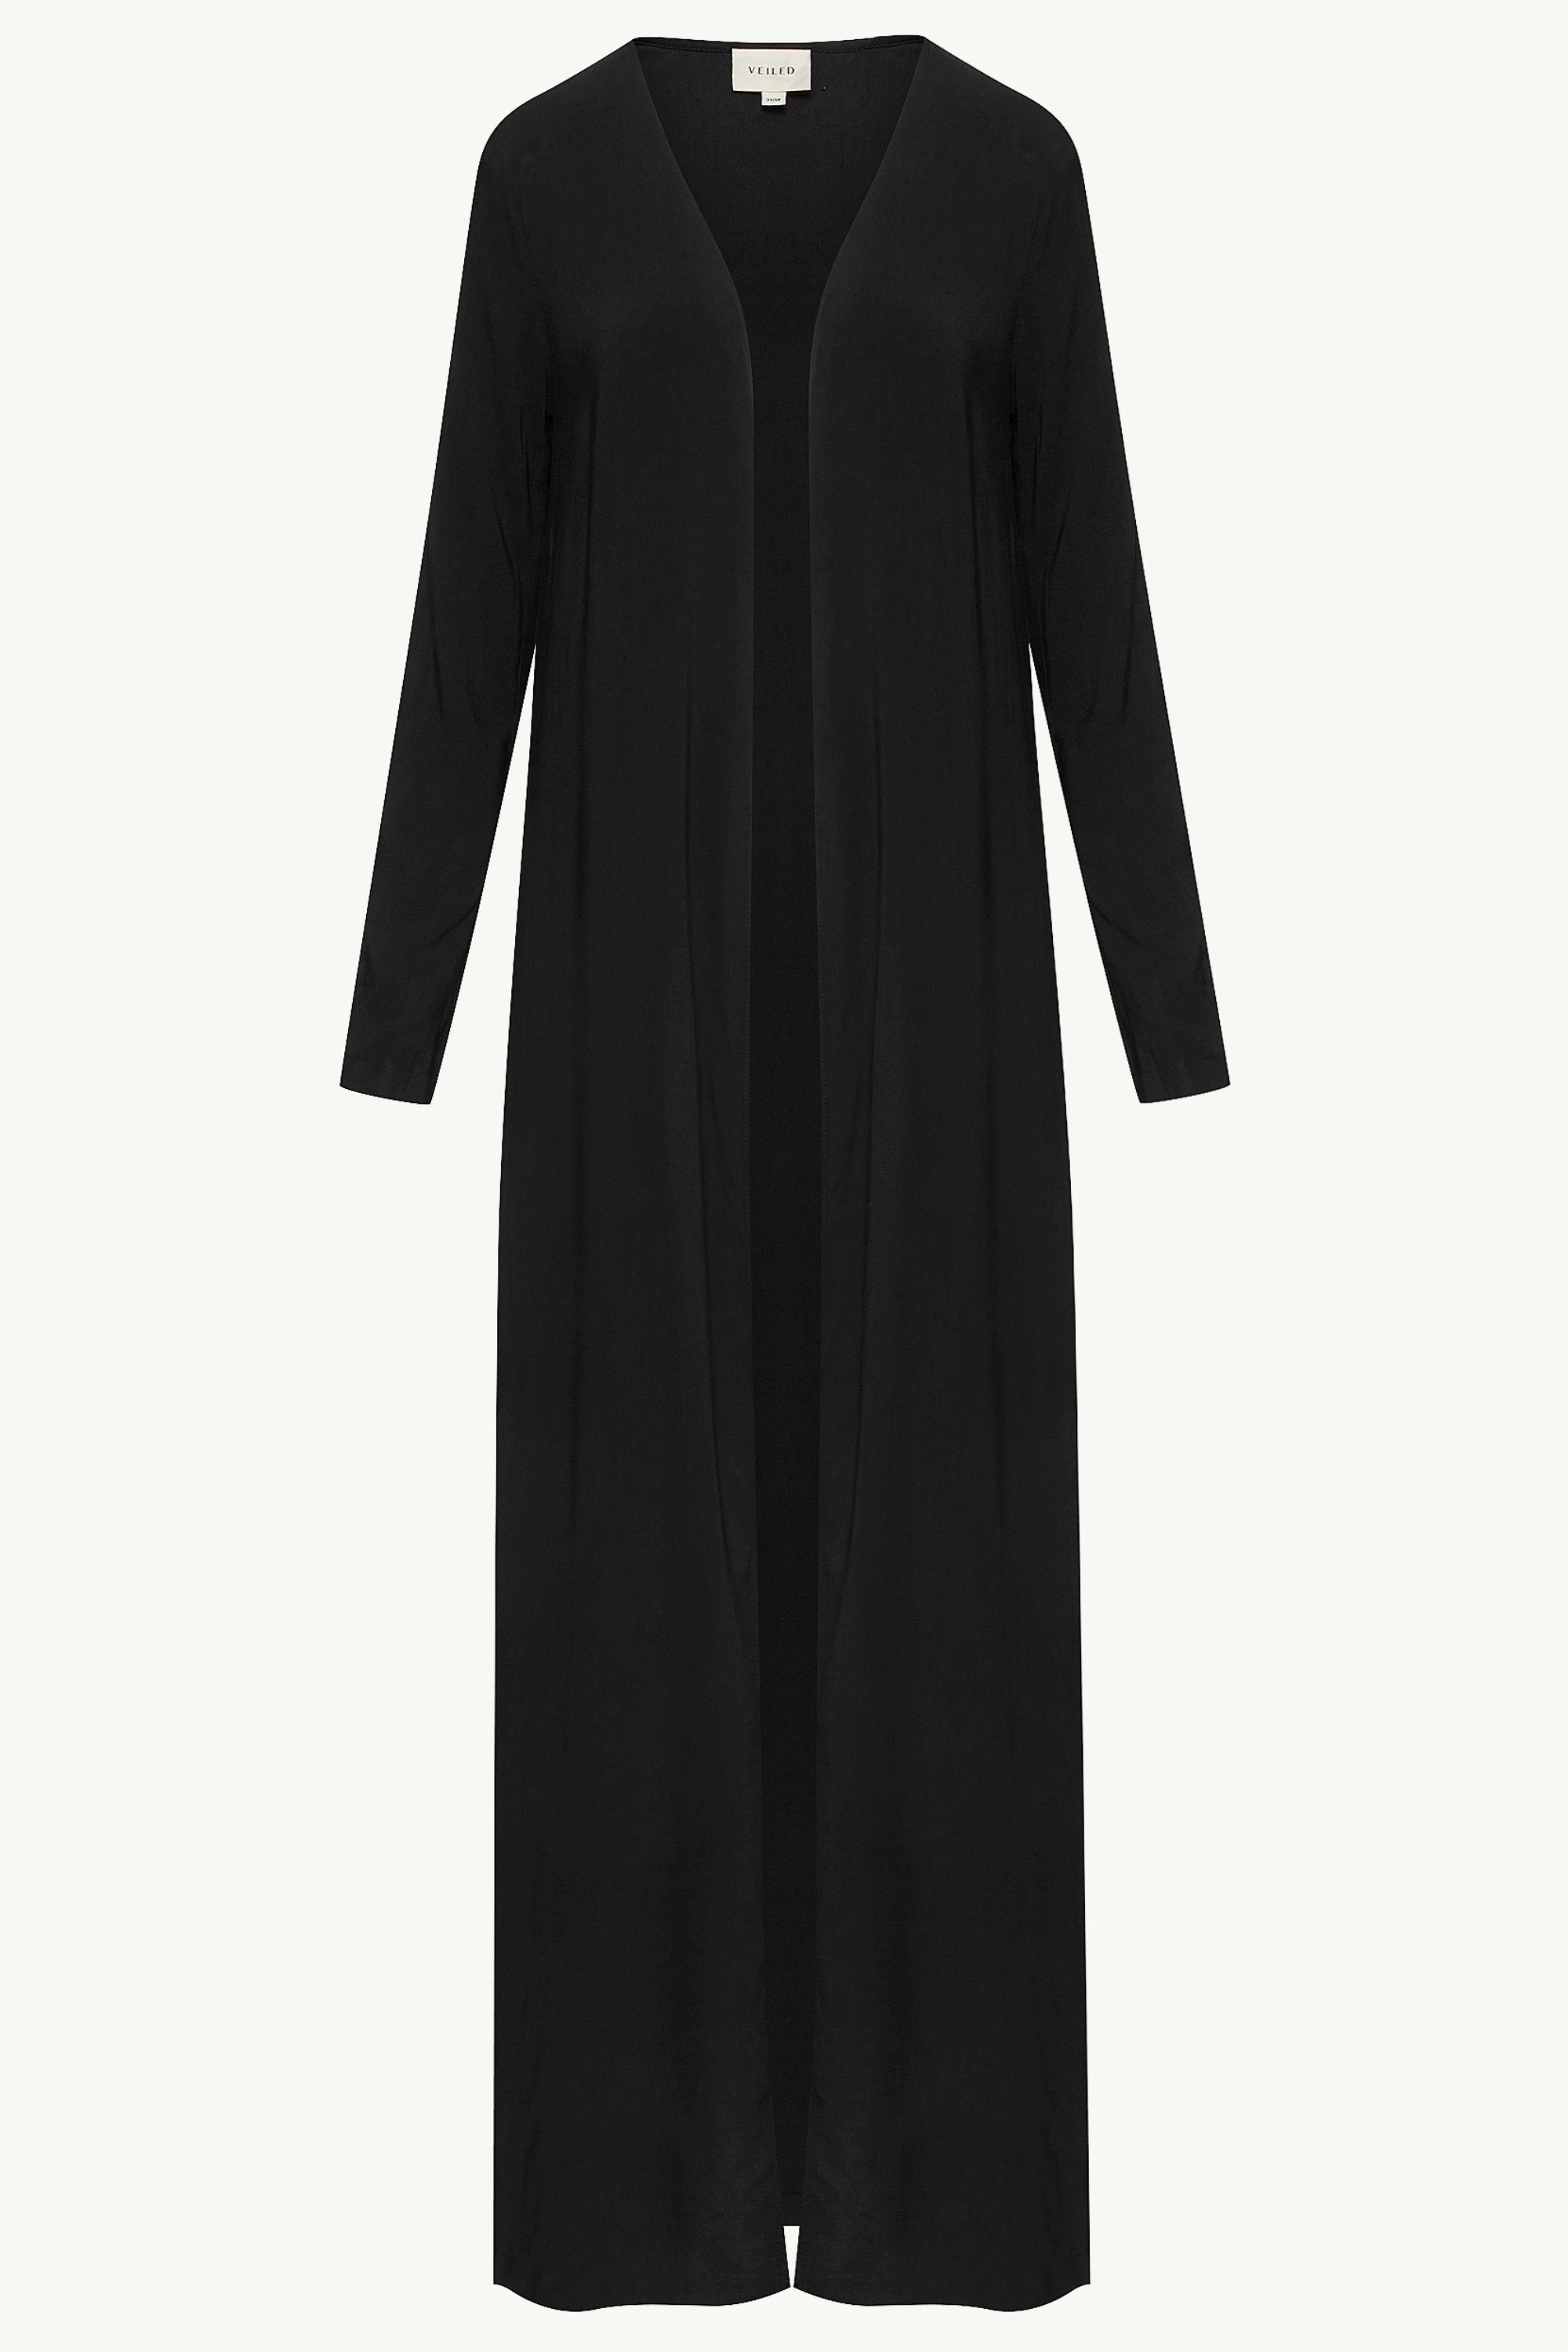 Essential Woven Open Abaya - Black Clothing saigonodysseyhotel 